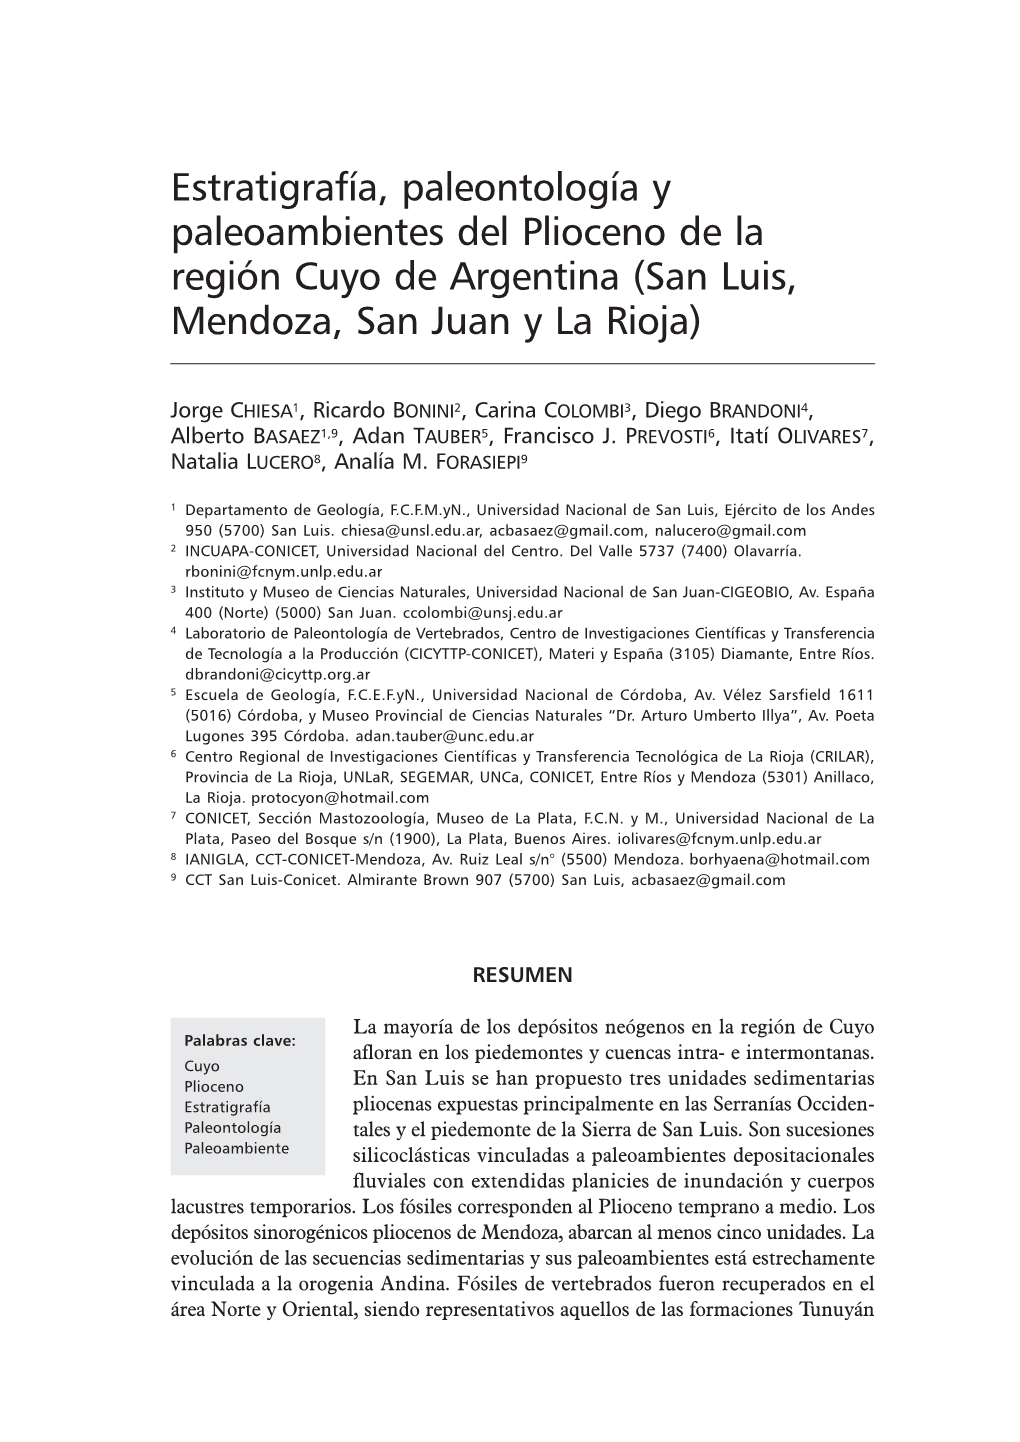 Estratigrafía, Paleontología Y Paleoambientes Del Plioceno De La Región Cuyo 287